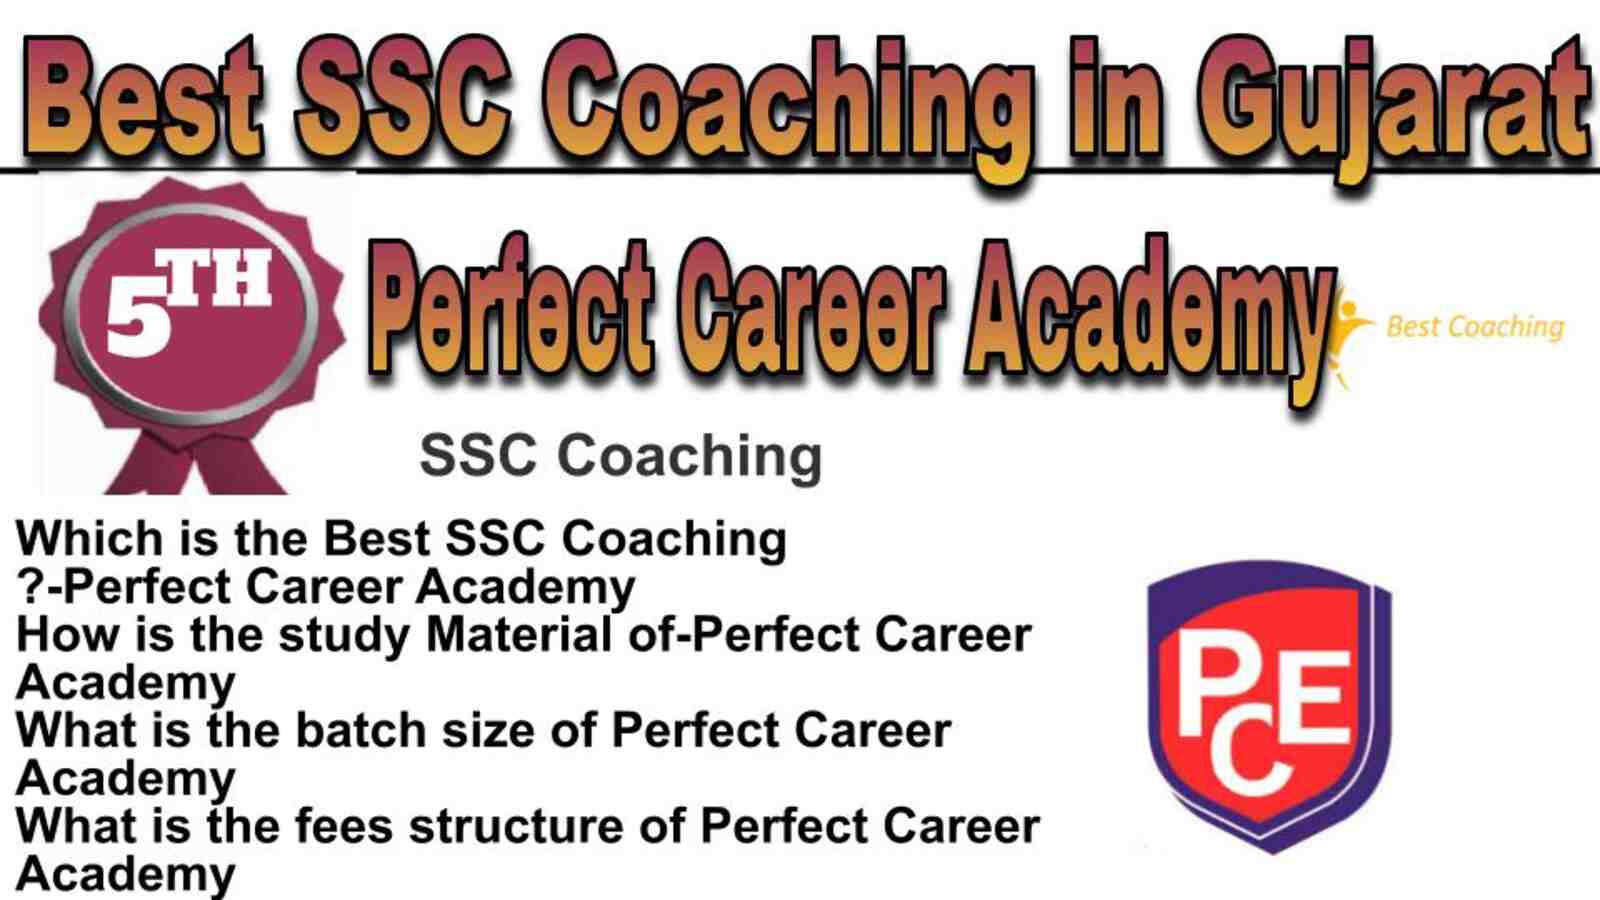 Rank 5 best SSC coaching in Gujarat